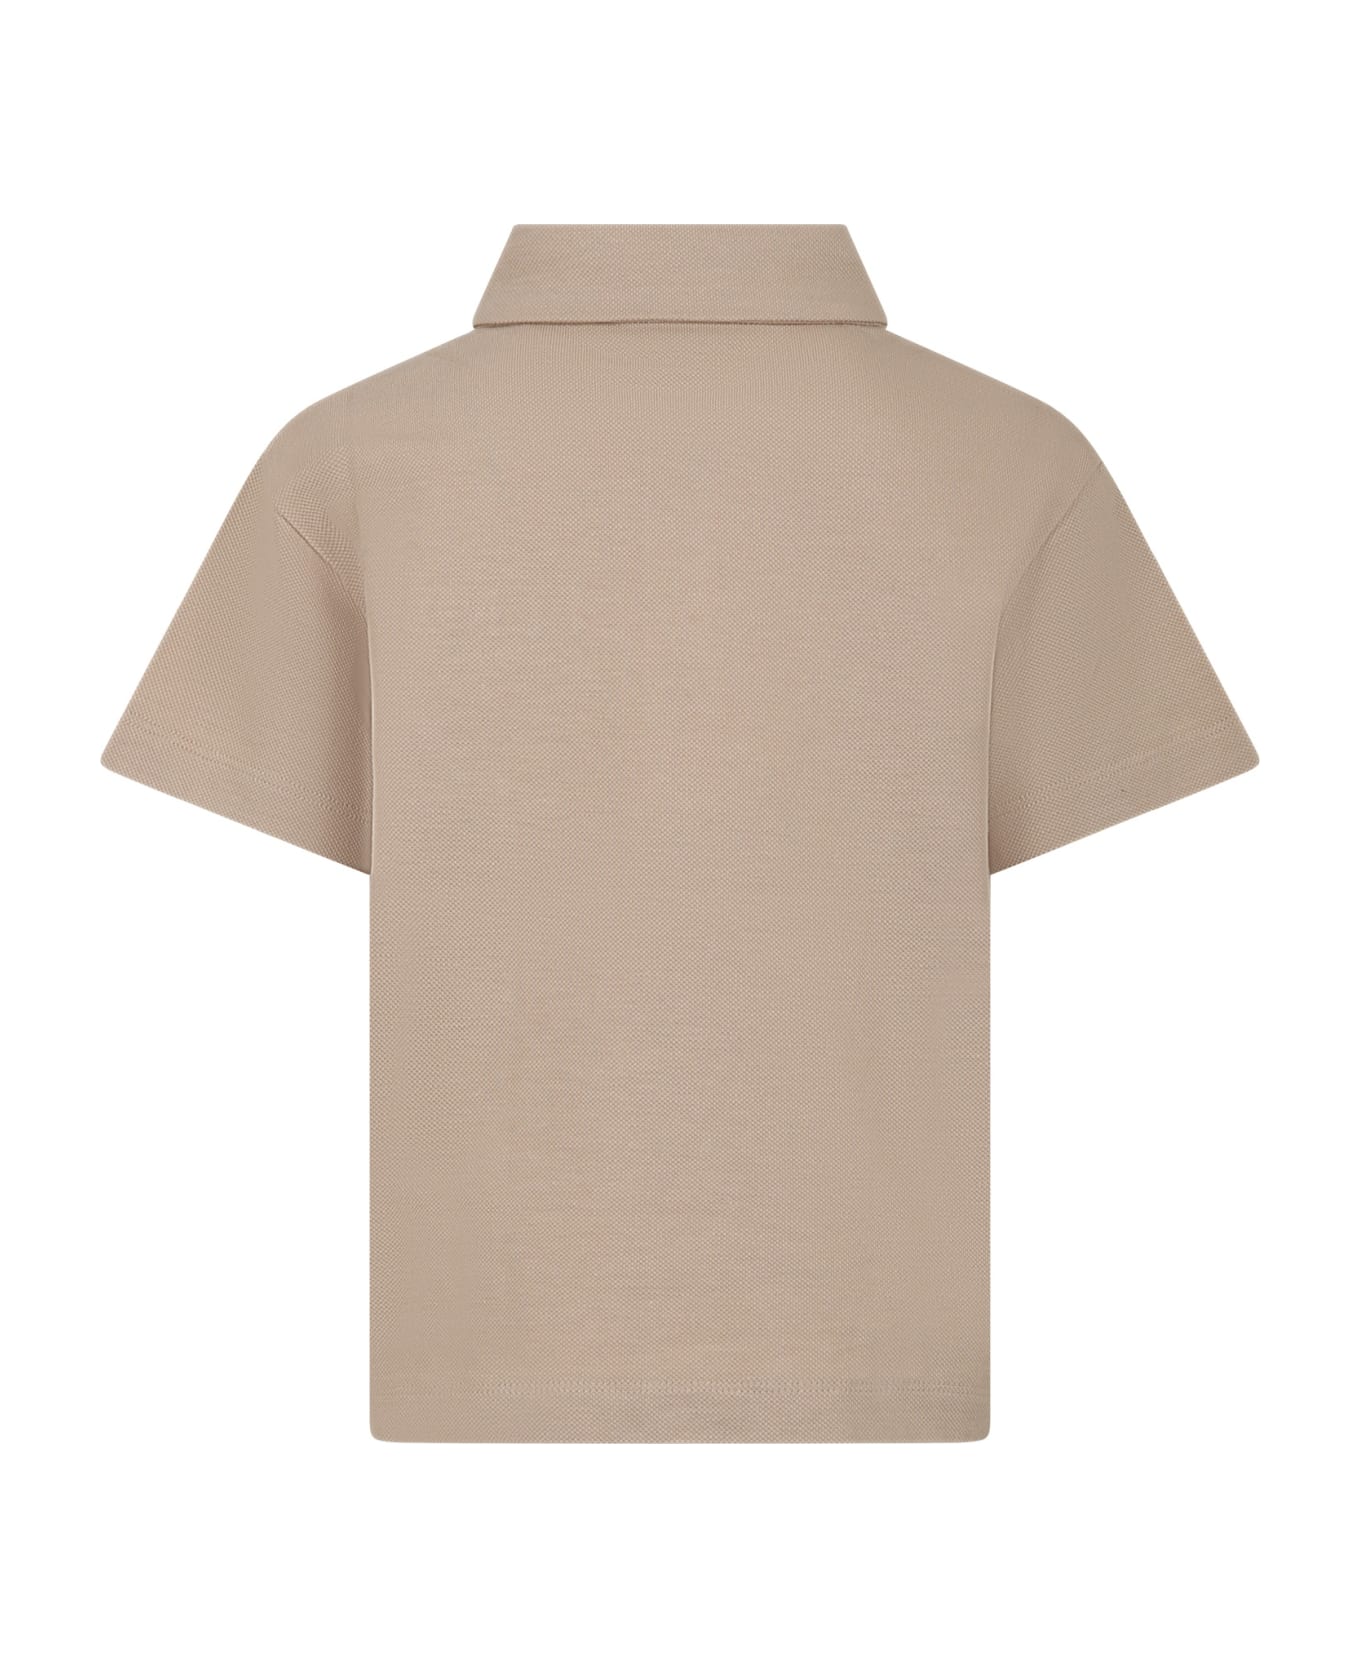 Fendi Beige Polo Shirt For Boy With Logo - Beige